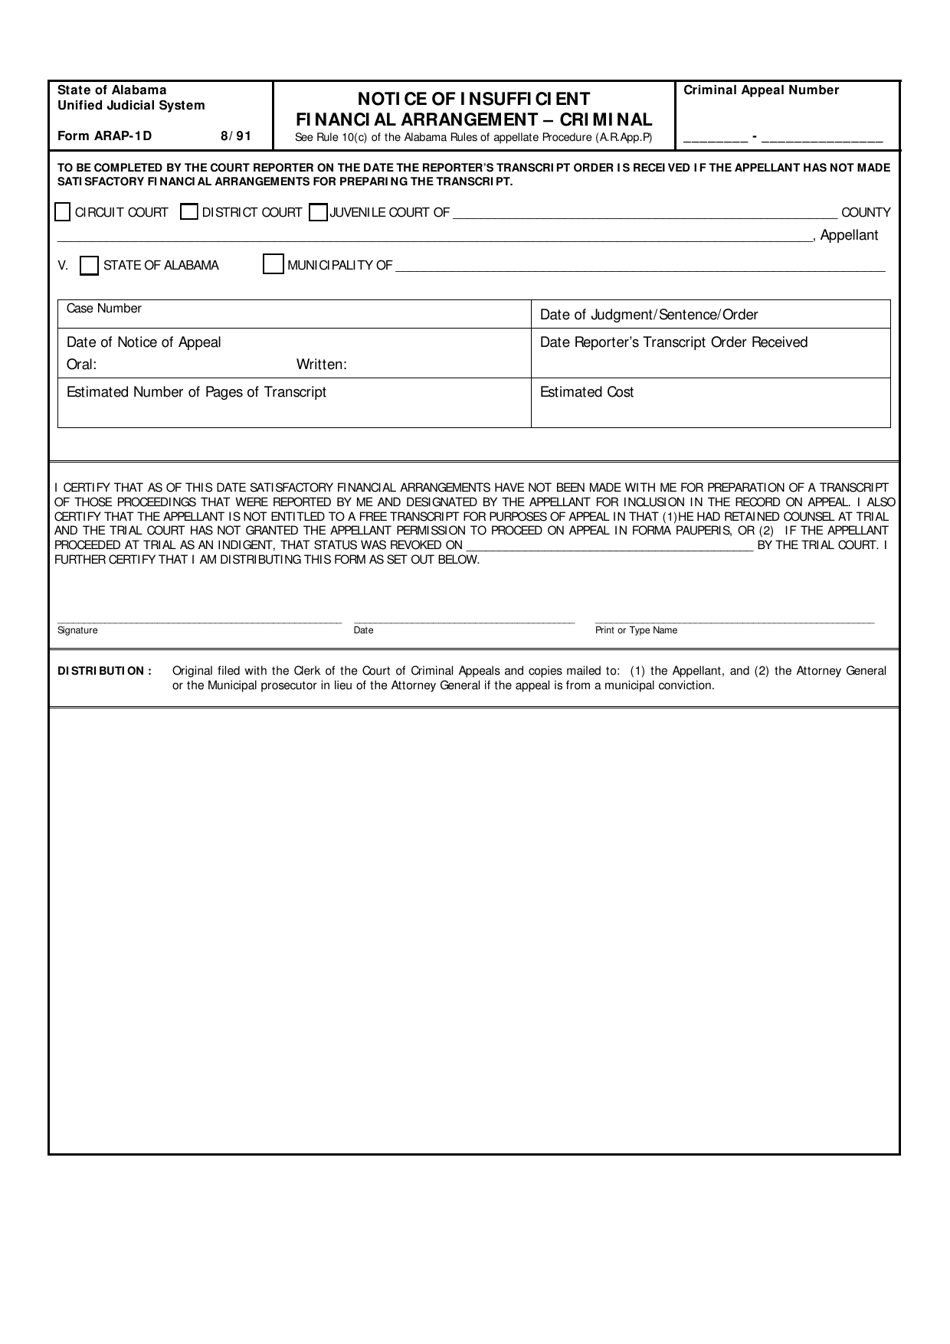 Form ARAP-1D Notice of Insufficient Financial Arrangement - Criminal - Alabama, Page 1